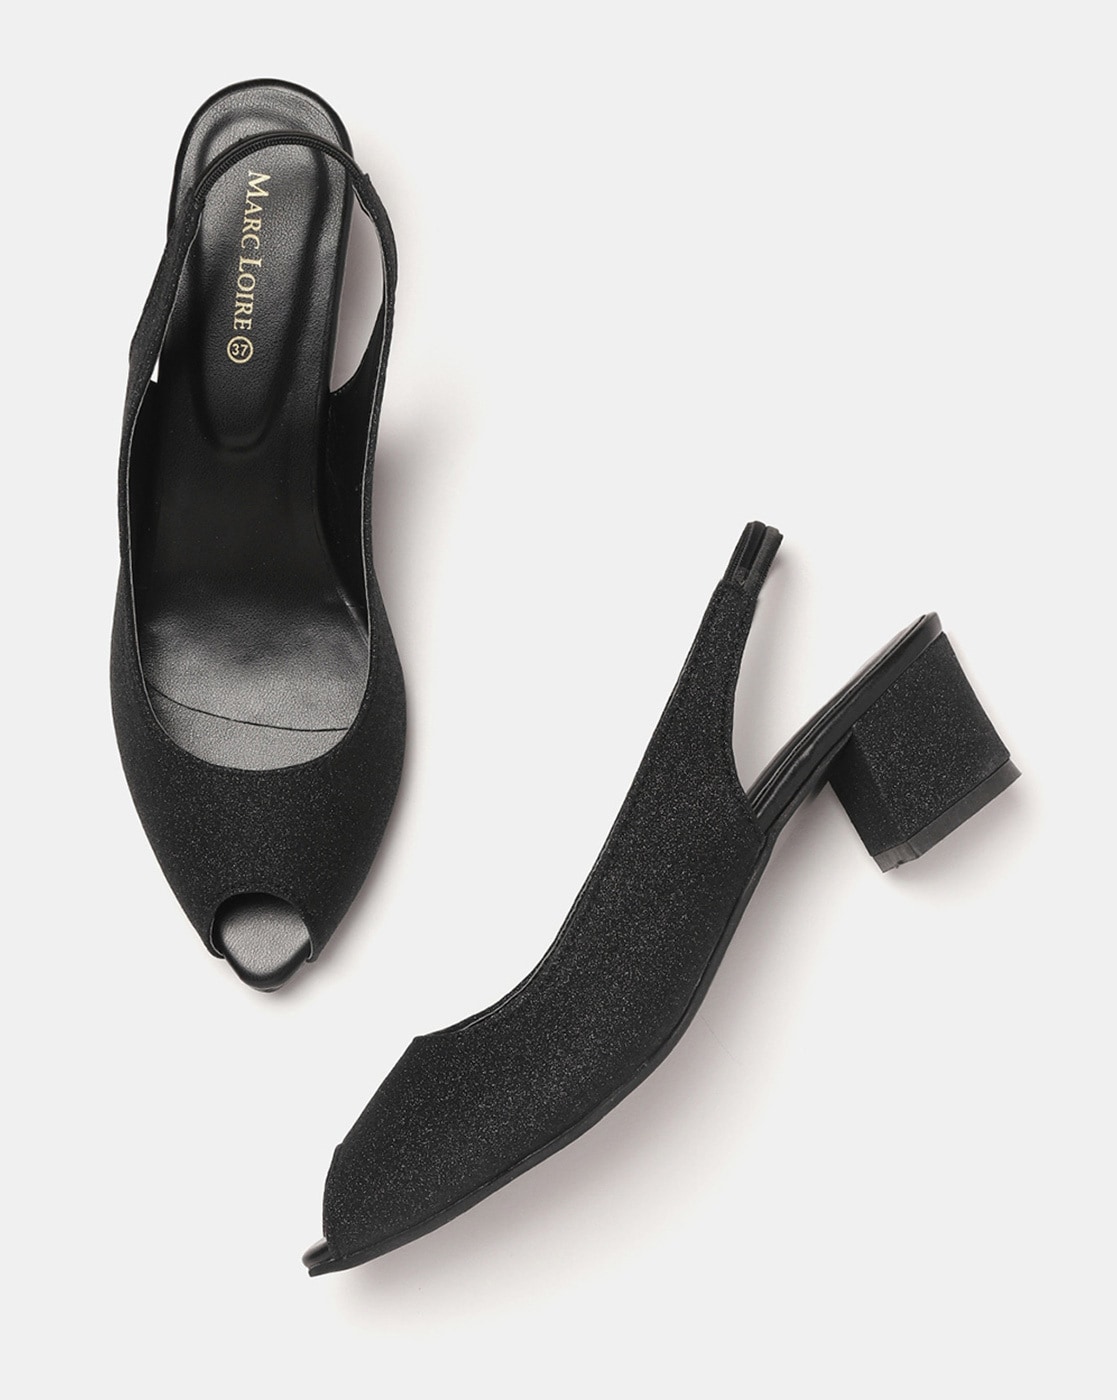 vaniya shoes Black Wedges Heels - Buy vaniya shoes Black Wedges Heels  Online at Best Prices in India on Snapdeal